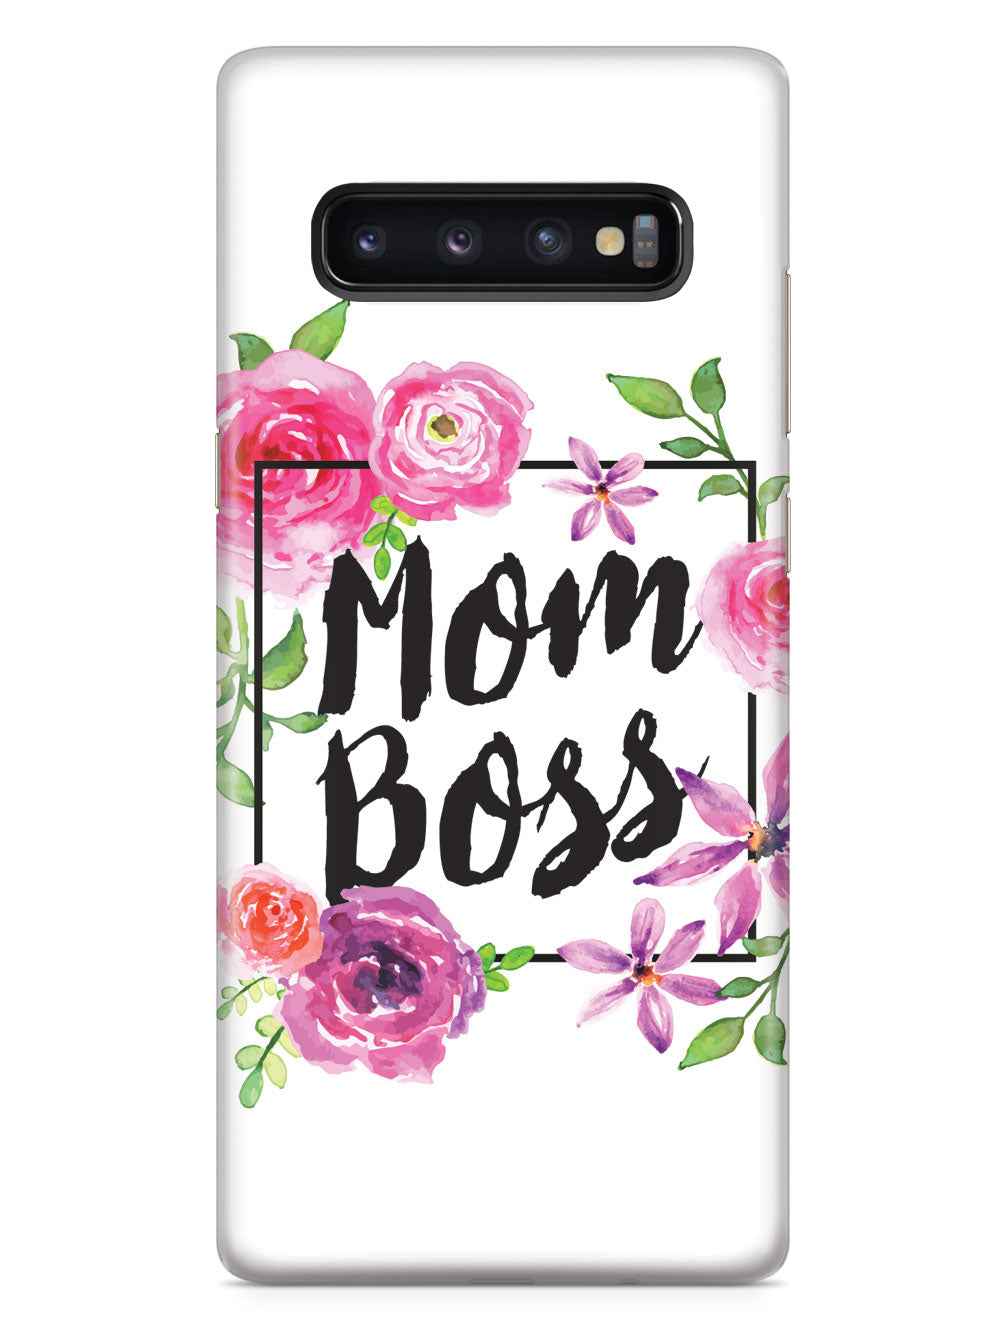 Mom Boss Case